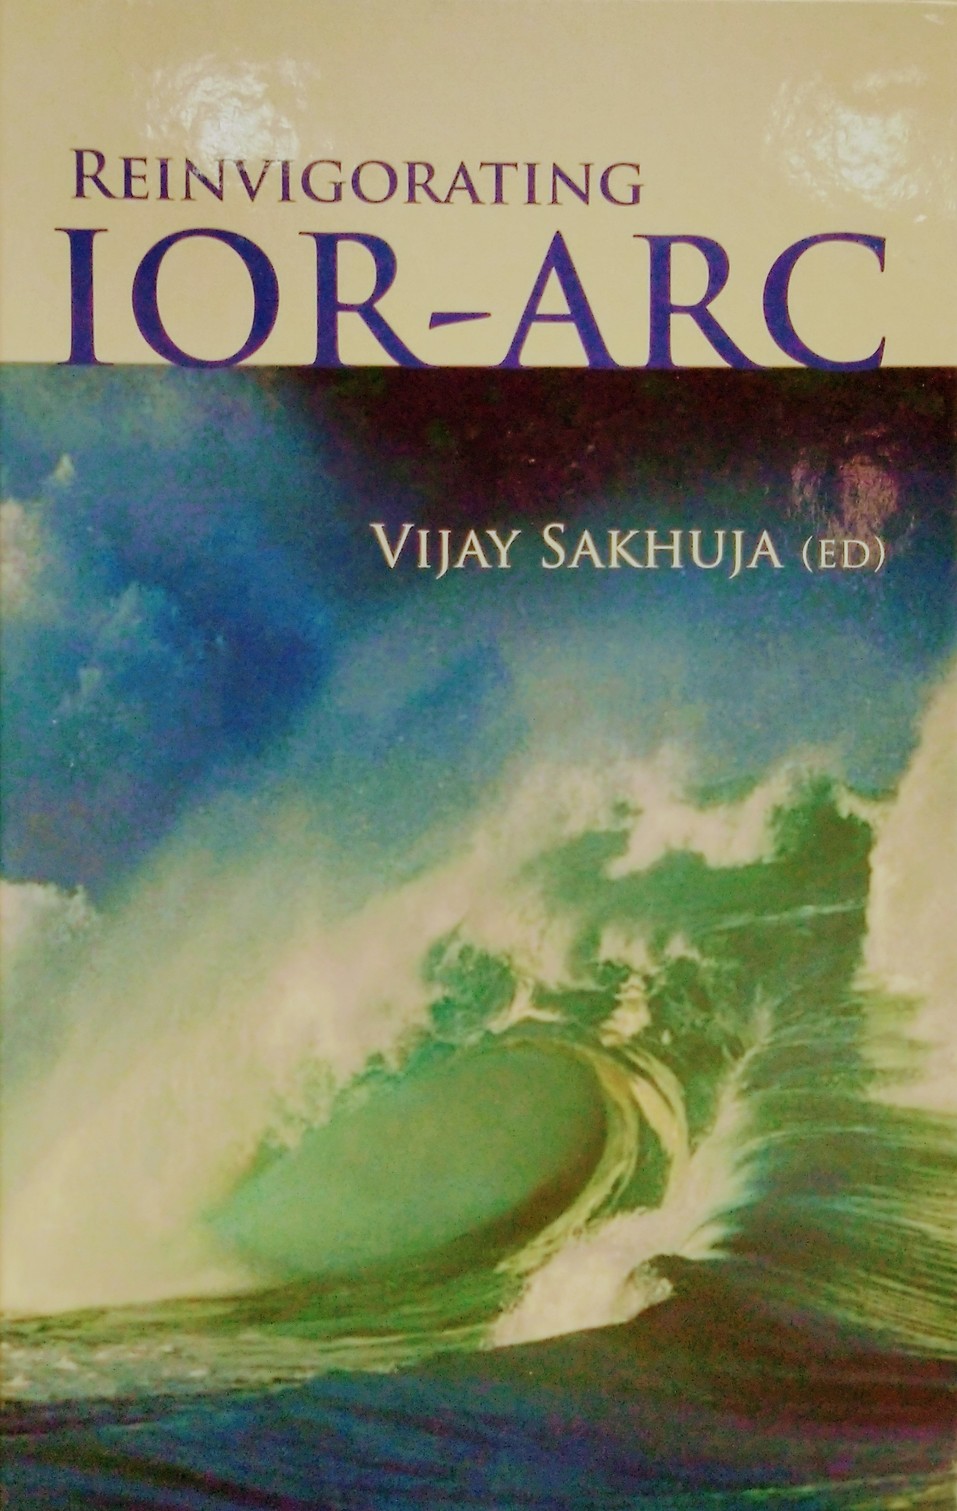 Reinvigorating IOR-ARC by Vijay Sakhuja